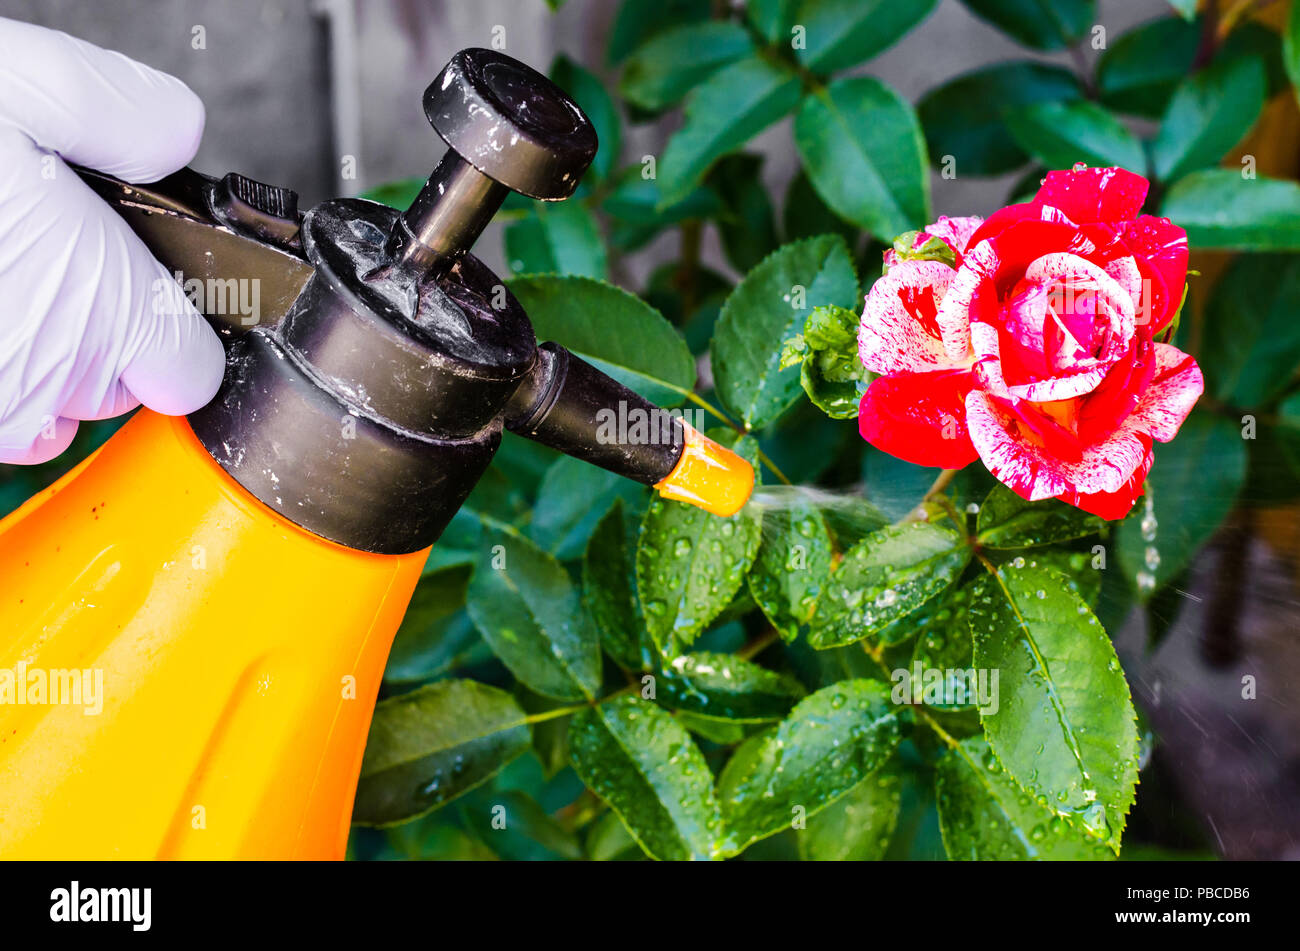 Einsatz von Pestiziden gegen die Schädlinge und Krankheiten an Rosen.  Studio Foto Stockfotografie - Alamy